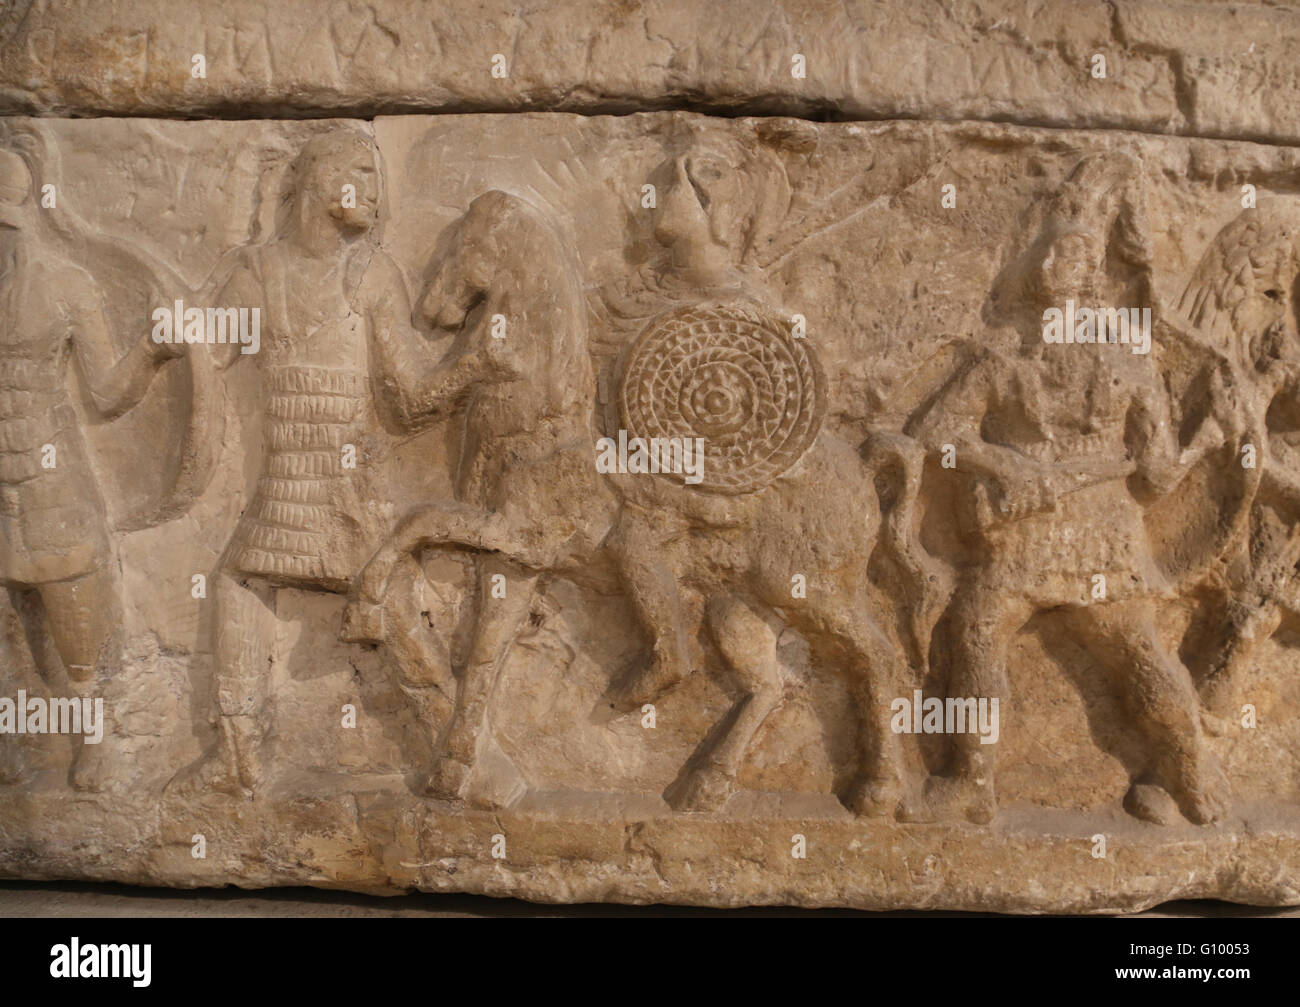 Etruskische Urne zurückzuführen. Relief. Soldaten.  Chiusi, Italien. 3. Jh. v. Chr.. Terrakotta. Louvre-Museum. Paris. Frankreich. Stockfoto